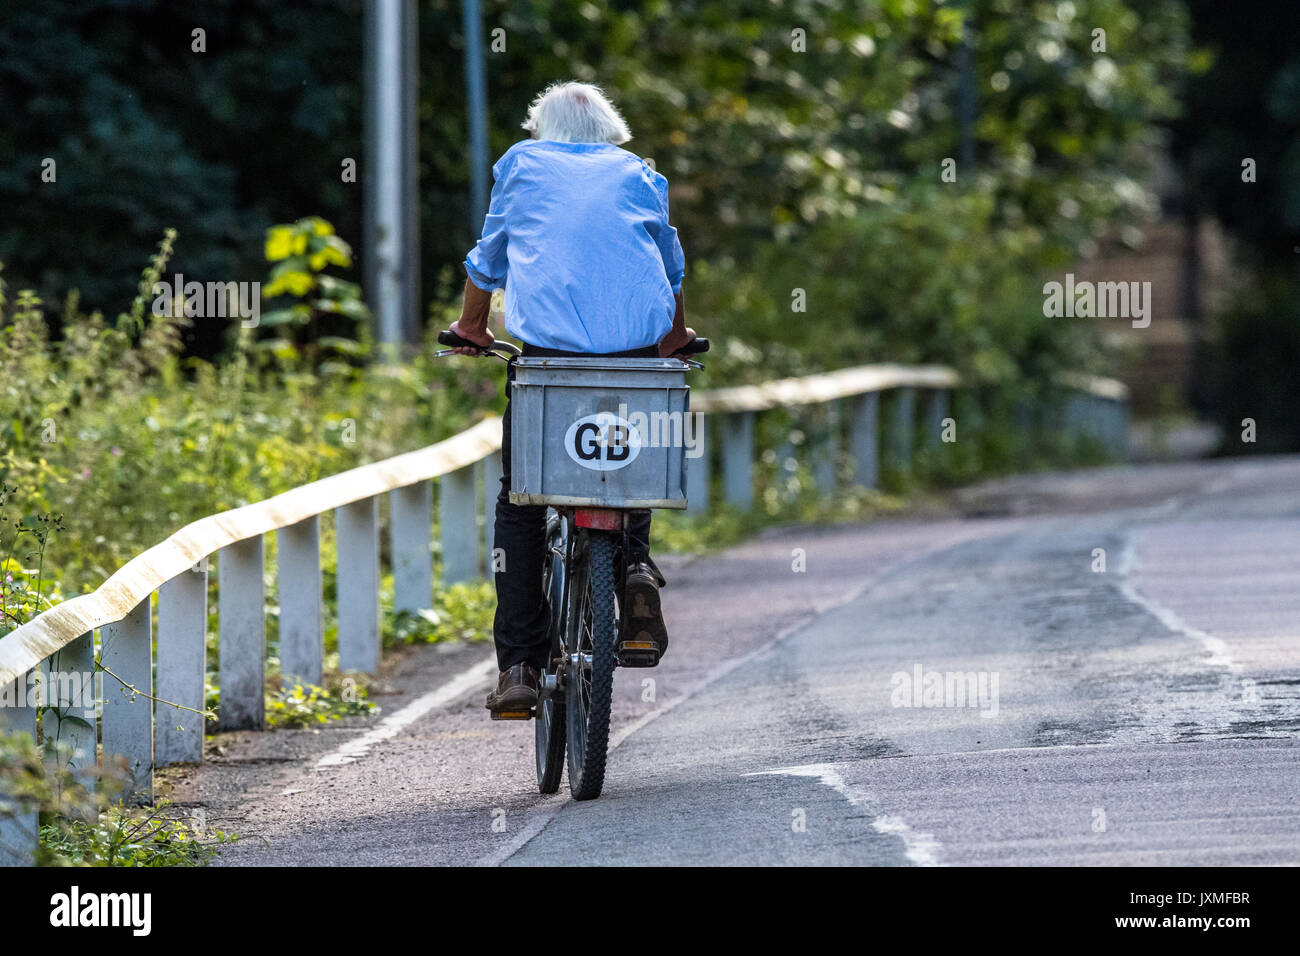 Mann auf einem Fahrrad auf einem Feldweg mit G.B. Aufkleber. Stockfoto